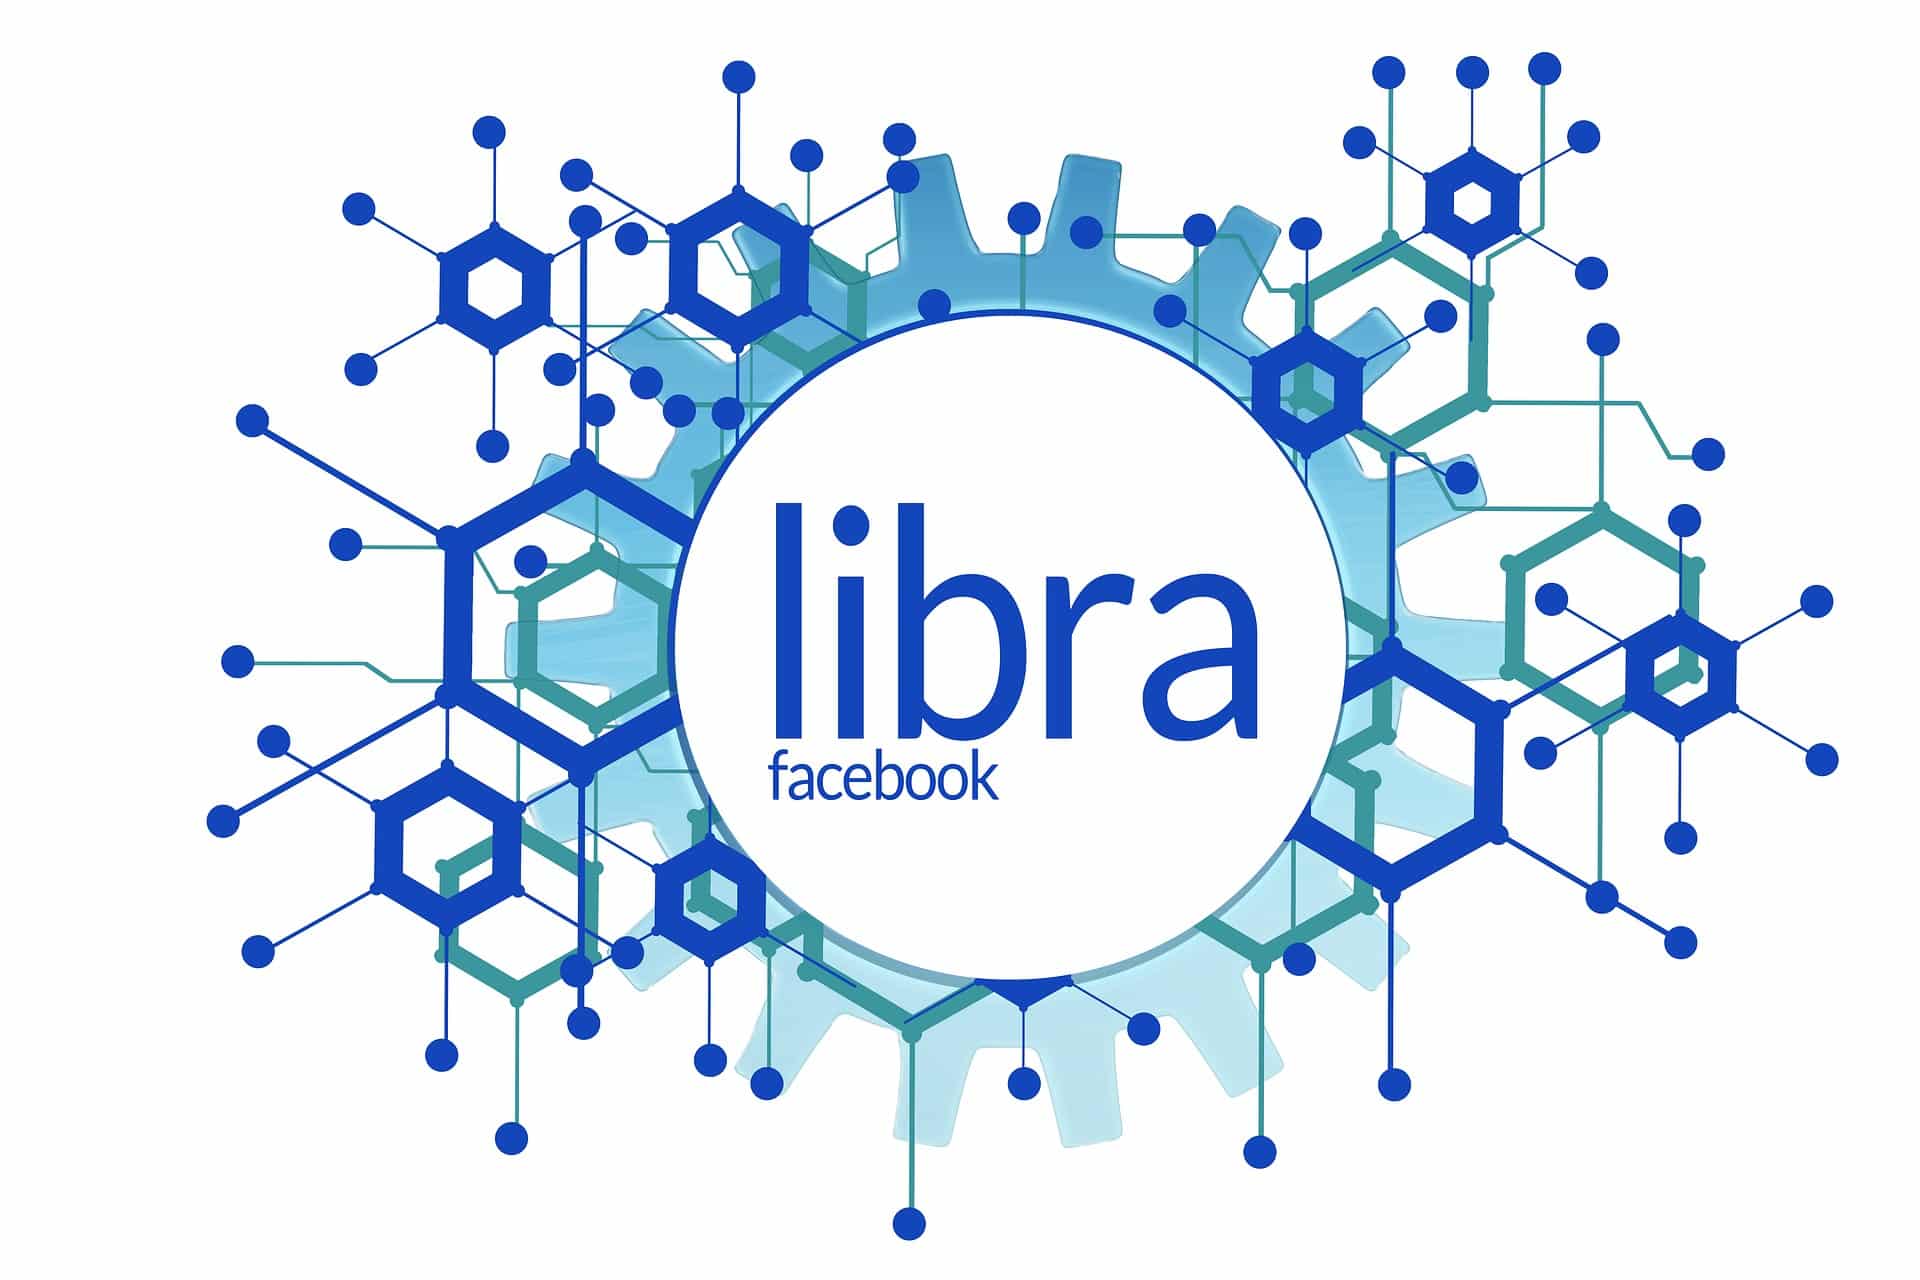 Fausses pubs pour Libra : Arnaque impliquant la future cryptomonnaie Facebook